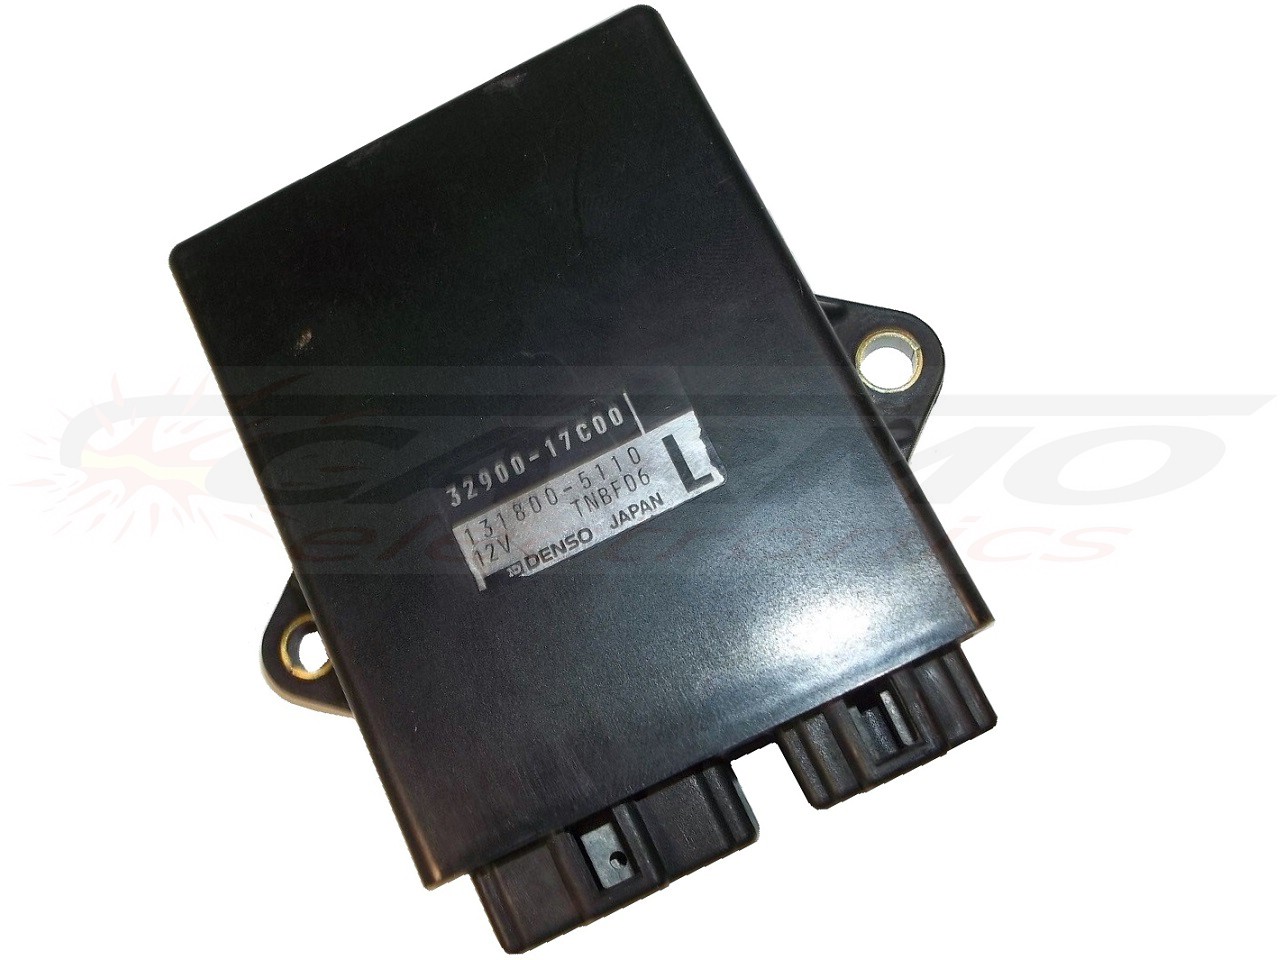 GSXR750 GSX-R750 TCI CDI dispositif de commande boîte noire (32900-17C00, 32900-17C10)